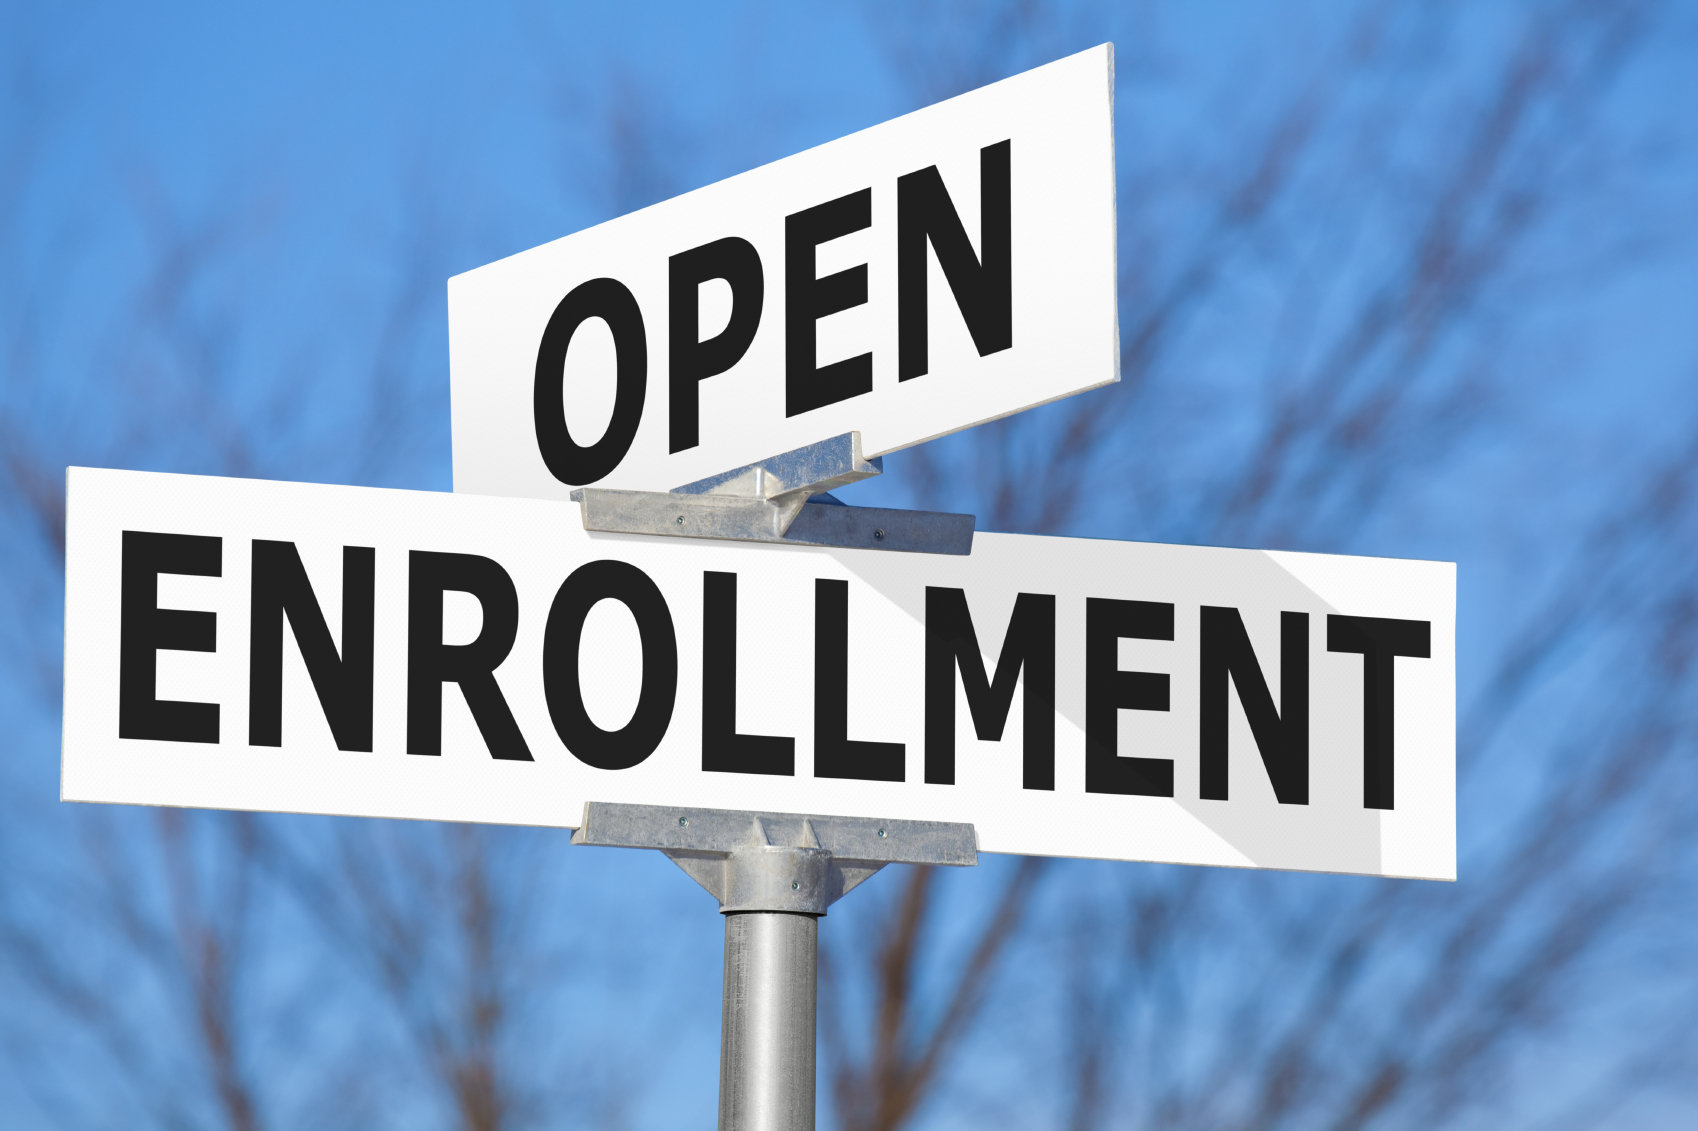 Medicare Open Enrollment Ends December 7